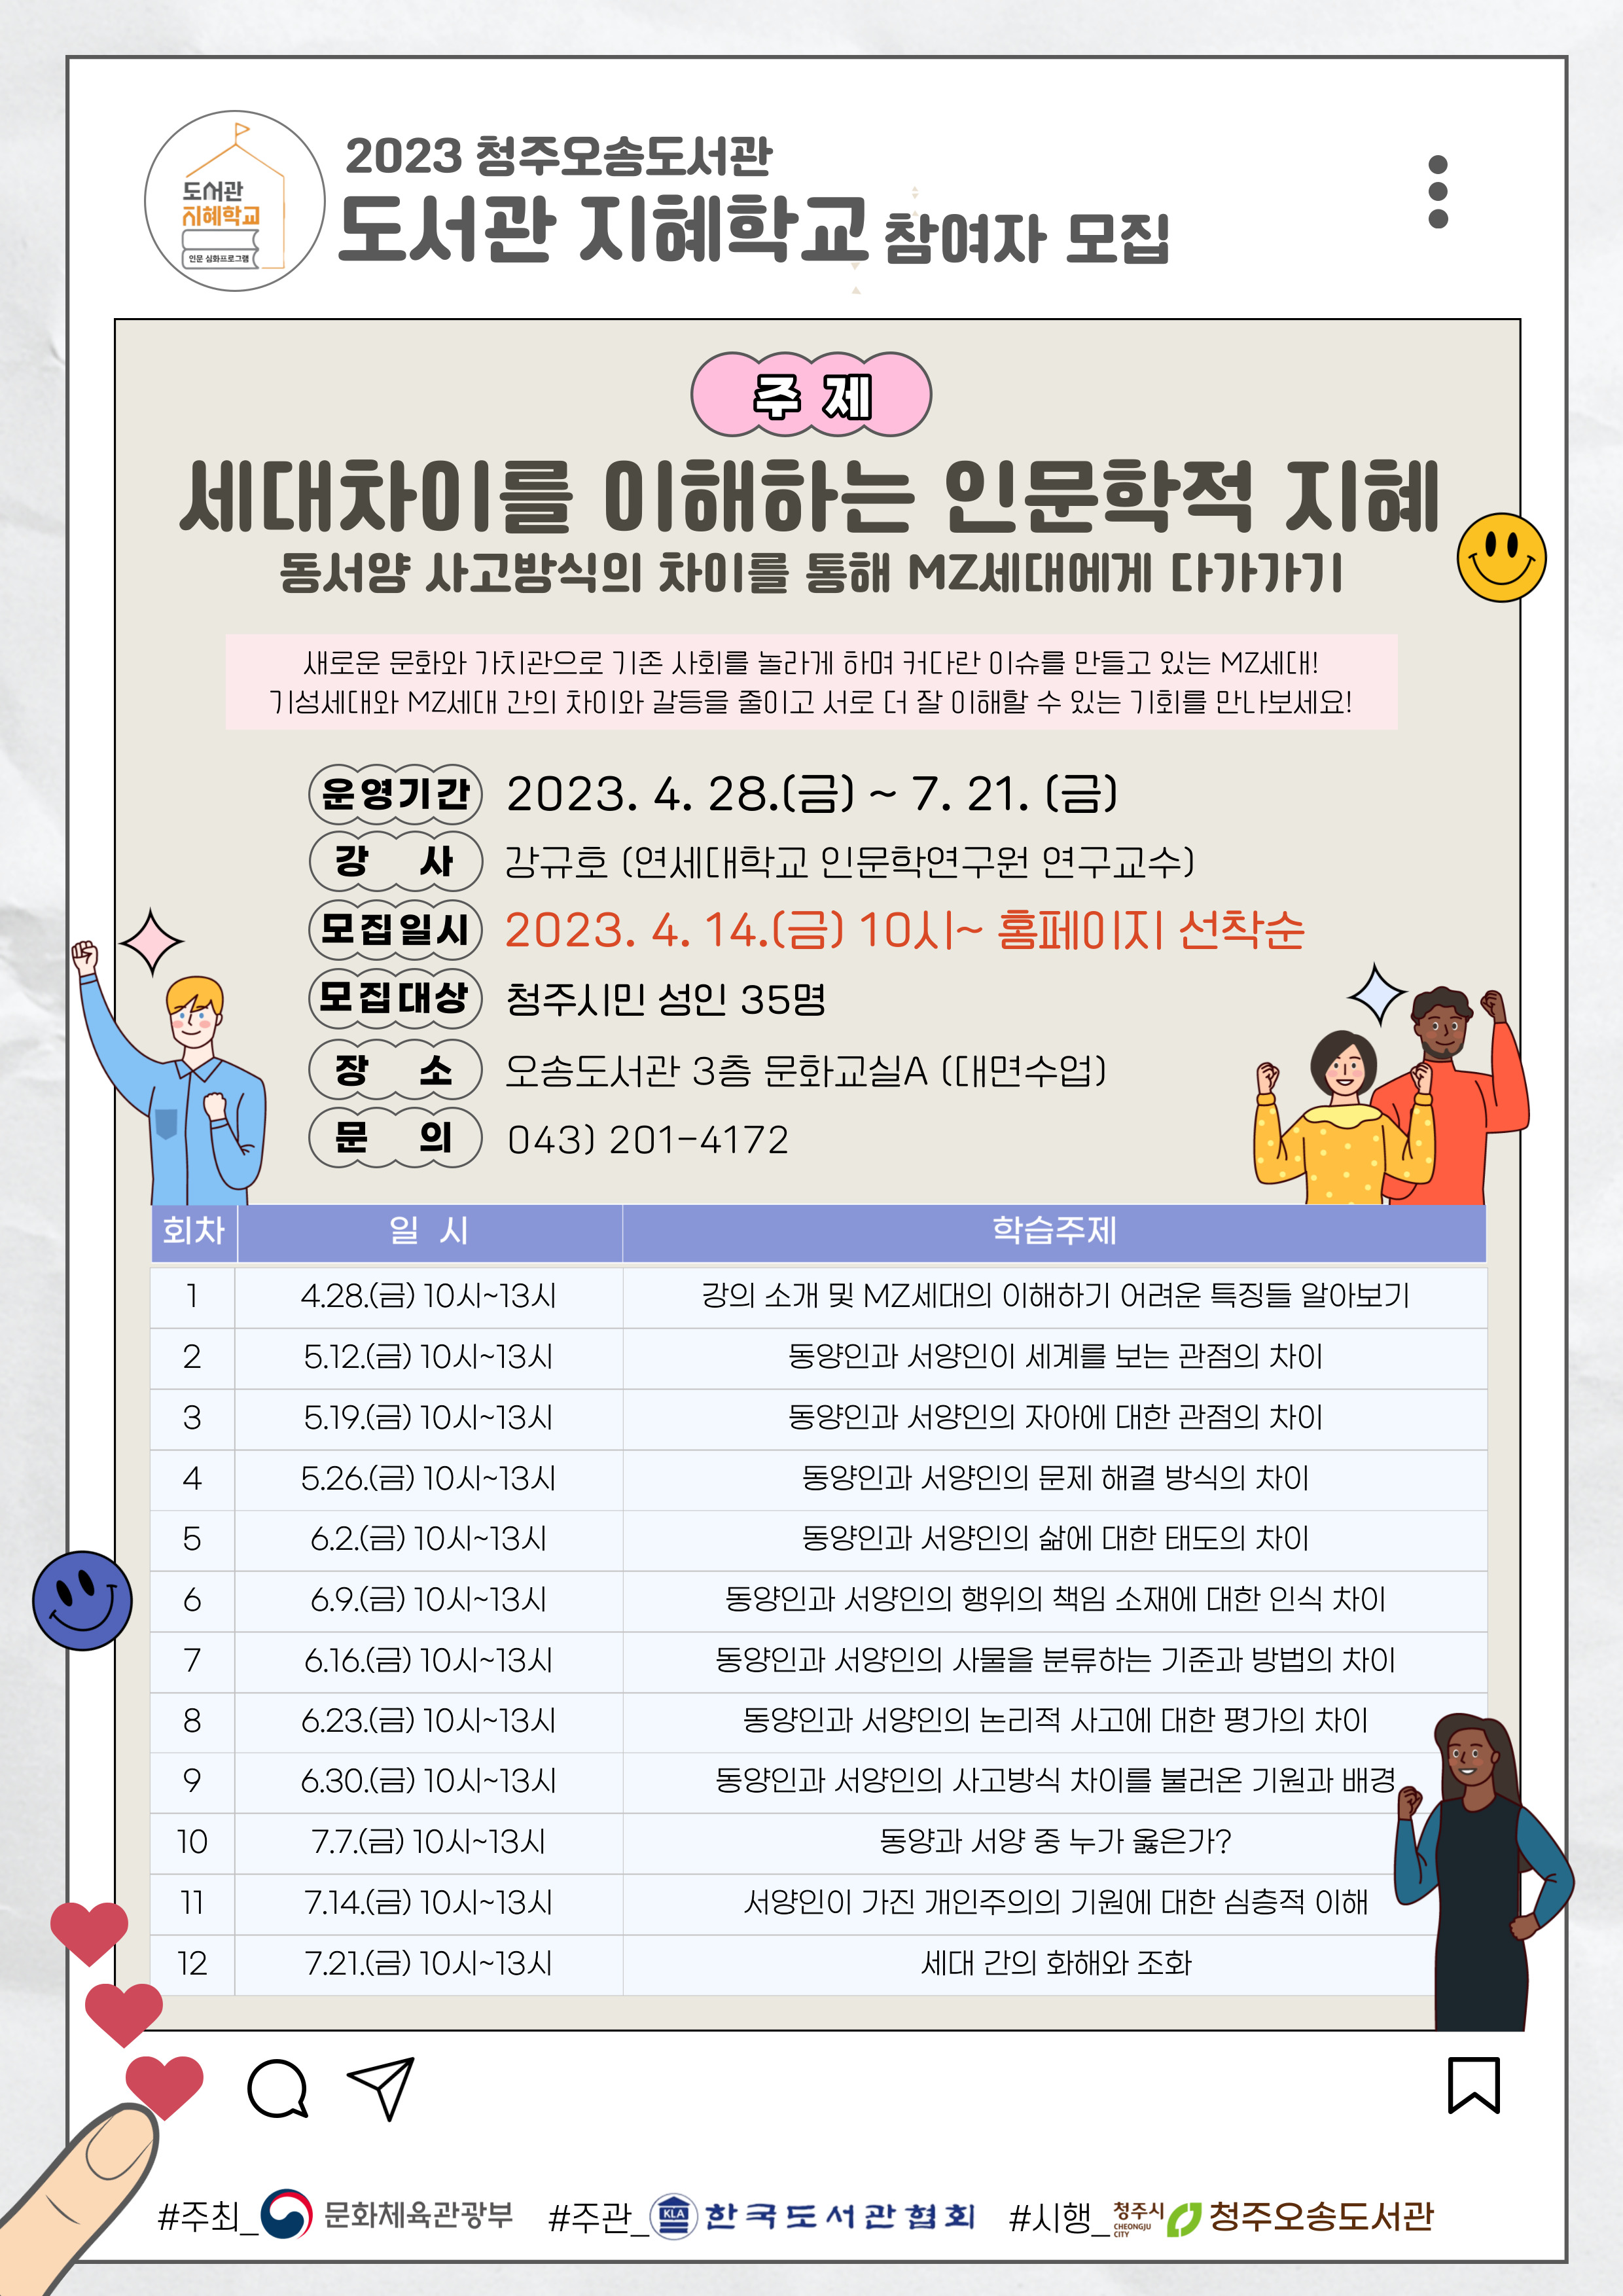 2023 청주오송도서관 도서관 지혜학교 참여자 모집